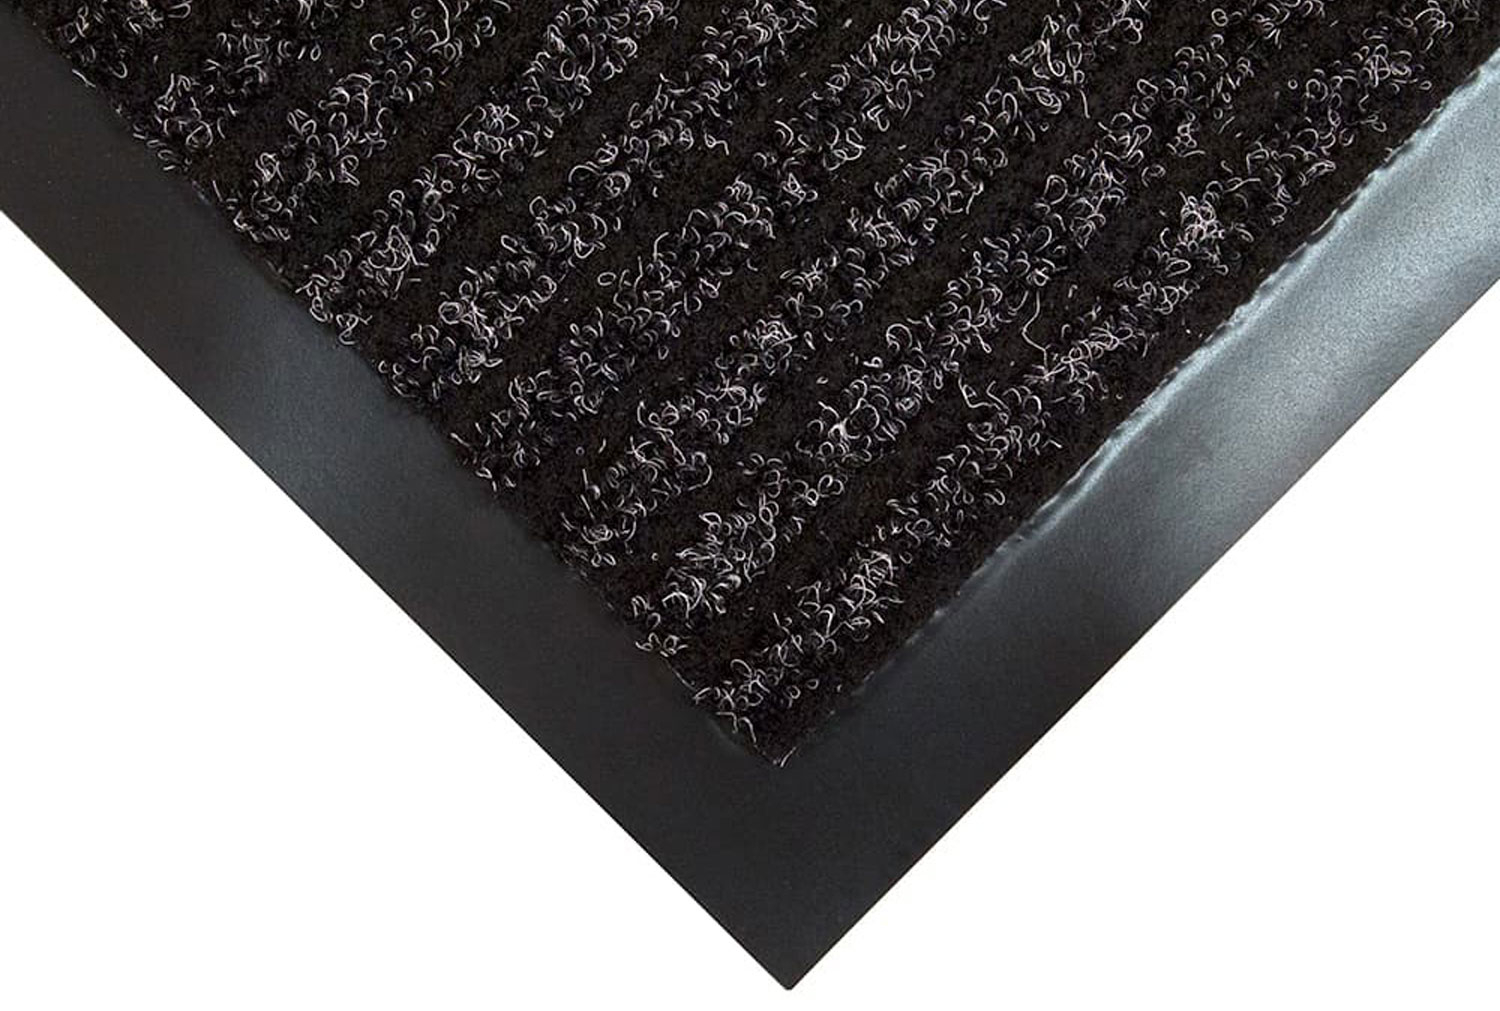 Toughrib Heavy Duty Doormat (Charcoal), 120wx180d (cm)